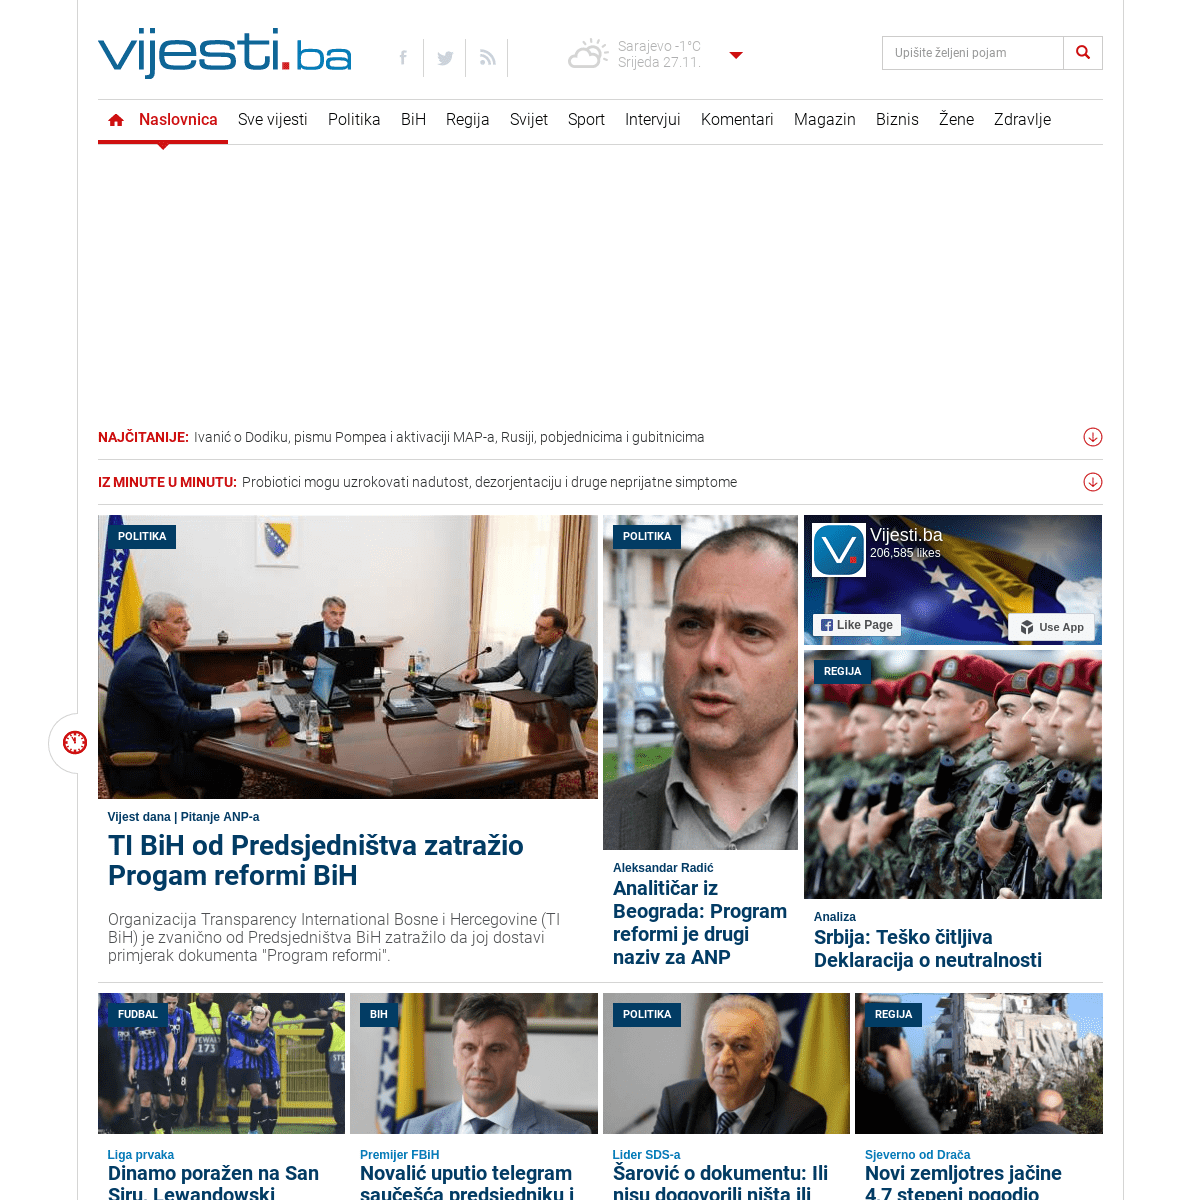 A complete backup of vijesti.ba